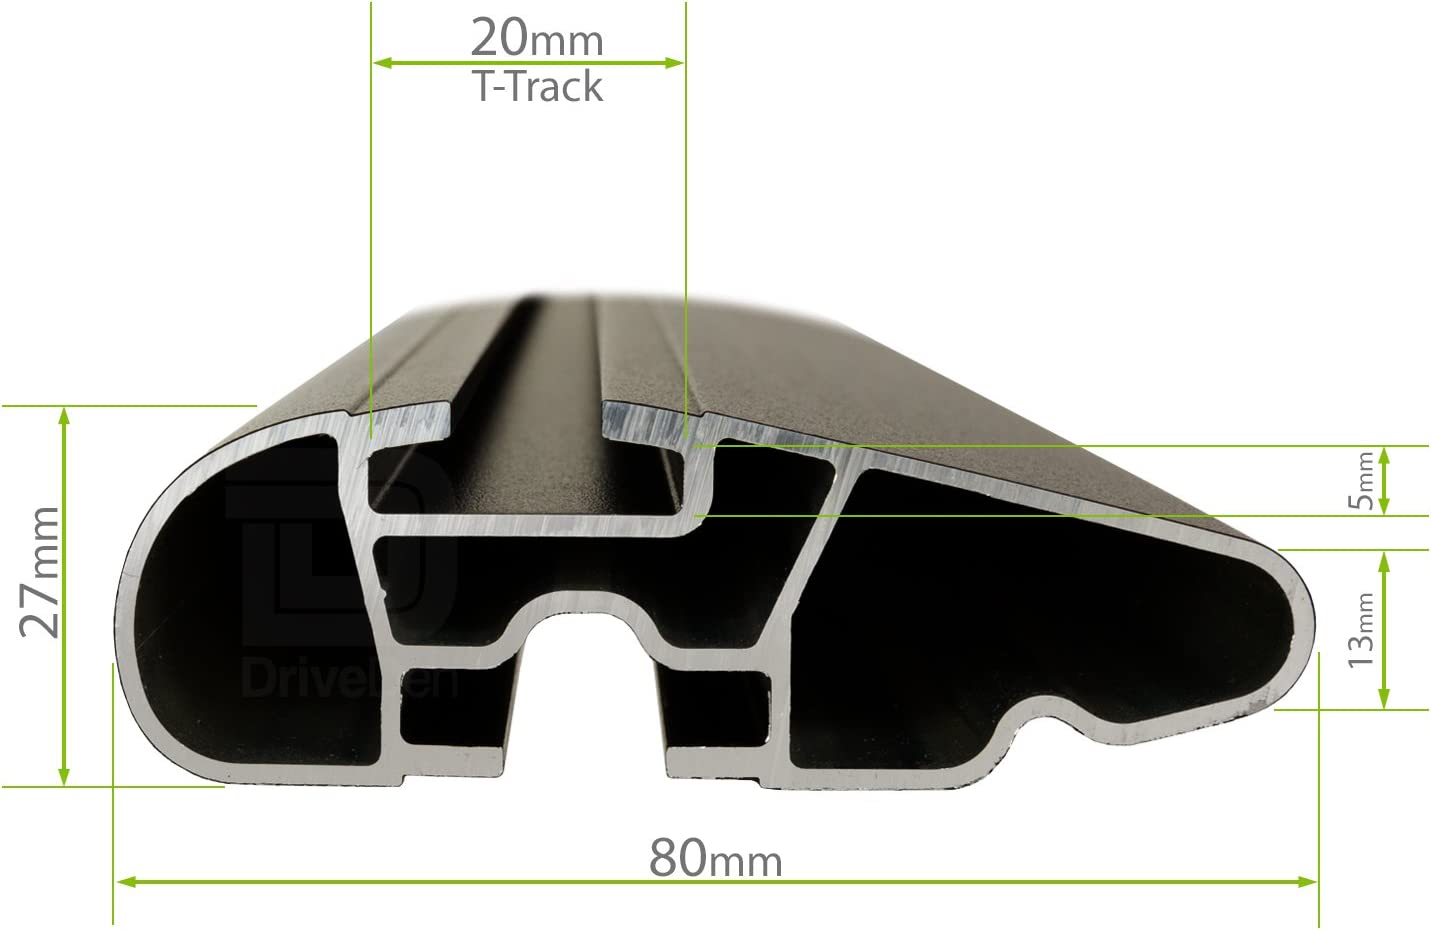 Barre portapacchi da abbinare al kit LuxHX1 - Kia Sorento 5 porte anno 2010-2015 (con corrimano alto)